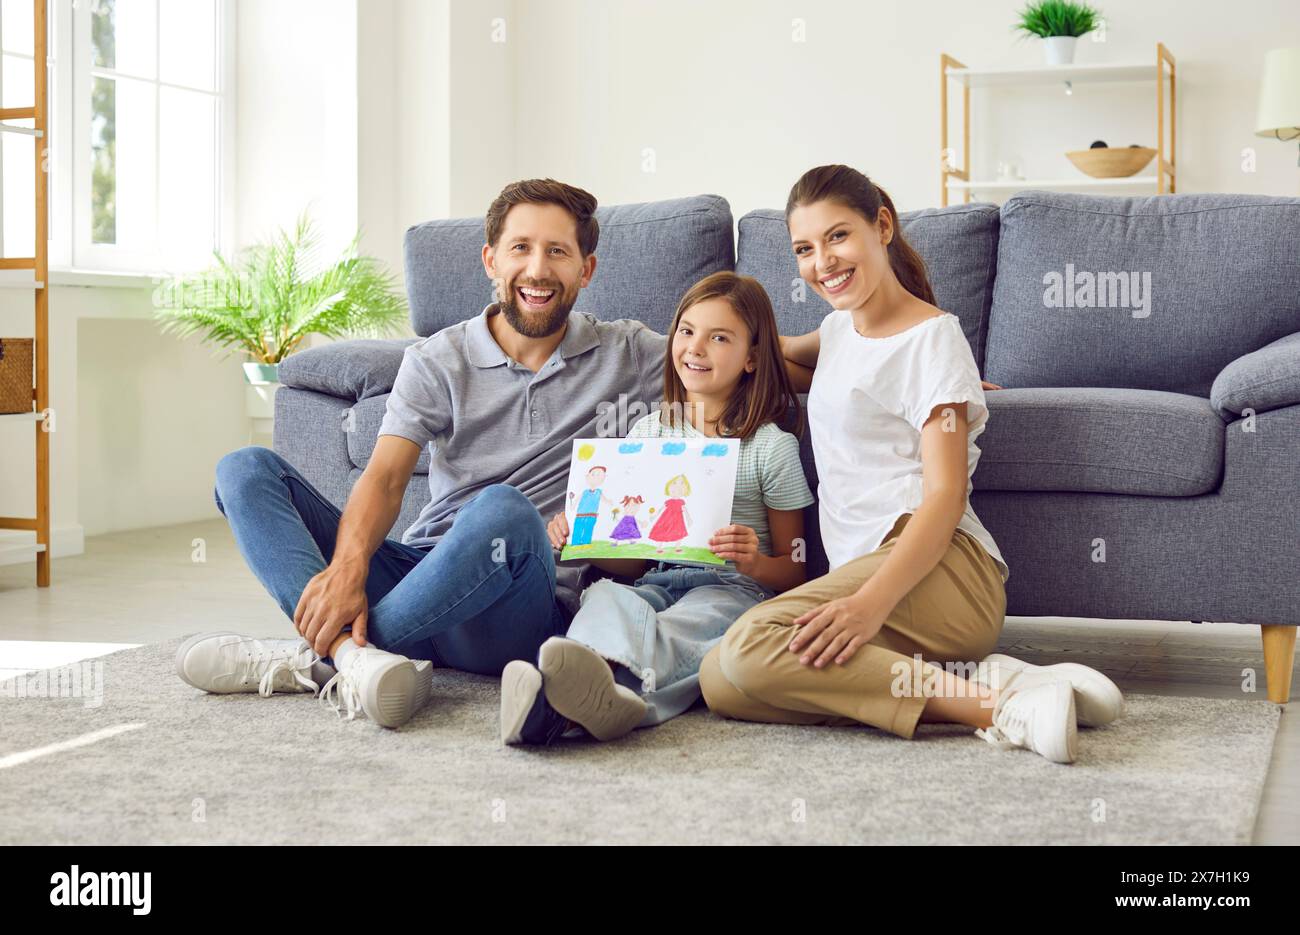 Lächelndes Mädchen, das auf dem Boden sitzt und die Eltern zu Hause zeigen, wie eine glückliche Familie gezeichnet ist. Stockfoto